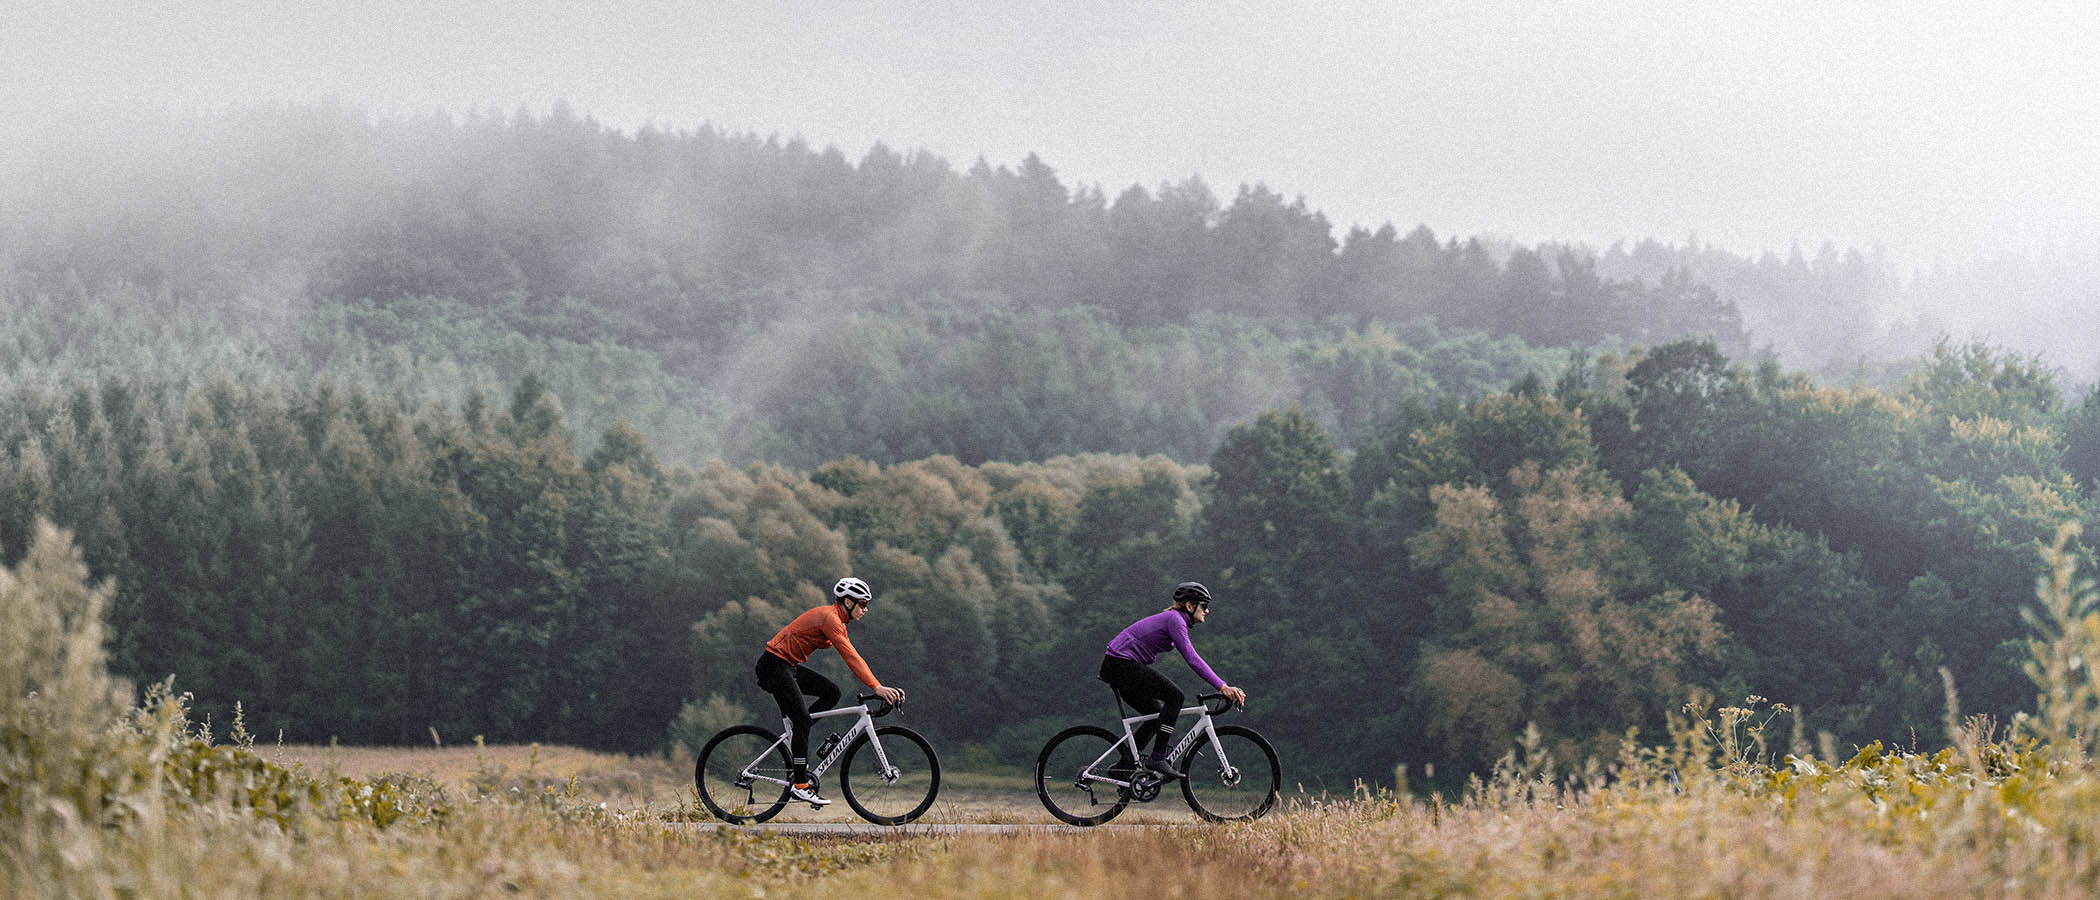 kolarstwo szosowe jesienią nie musi być nieprzyjemne dzięki odpowiedniej odzieży rowerowej na jesień